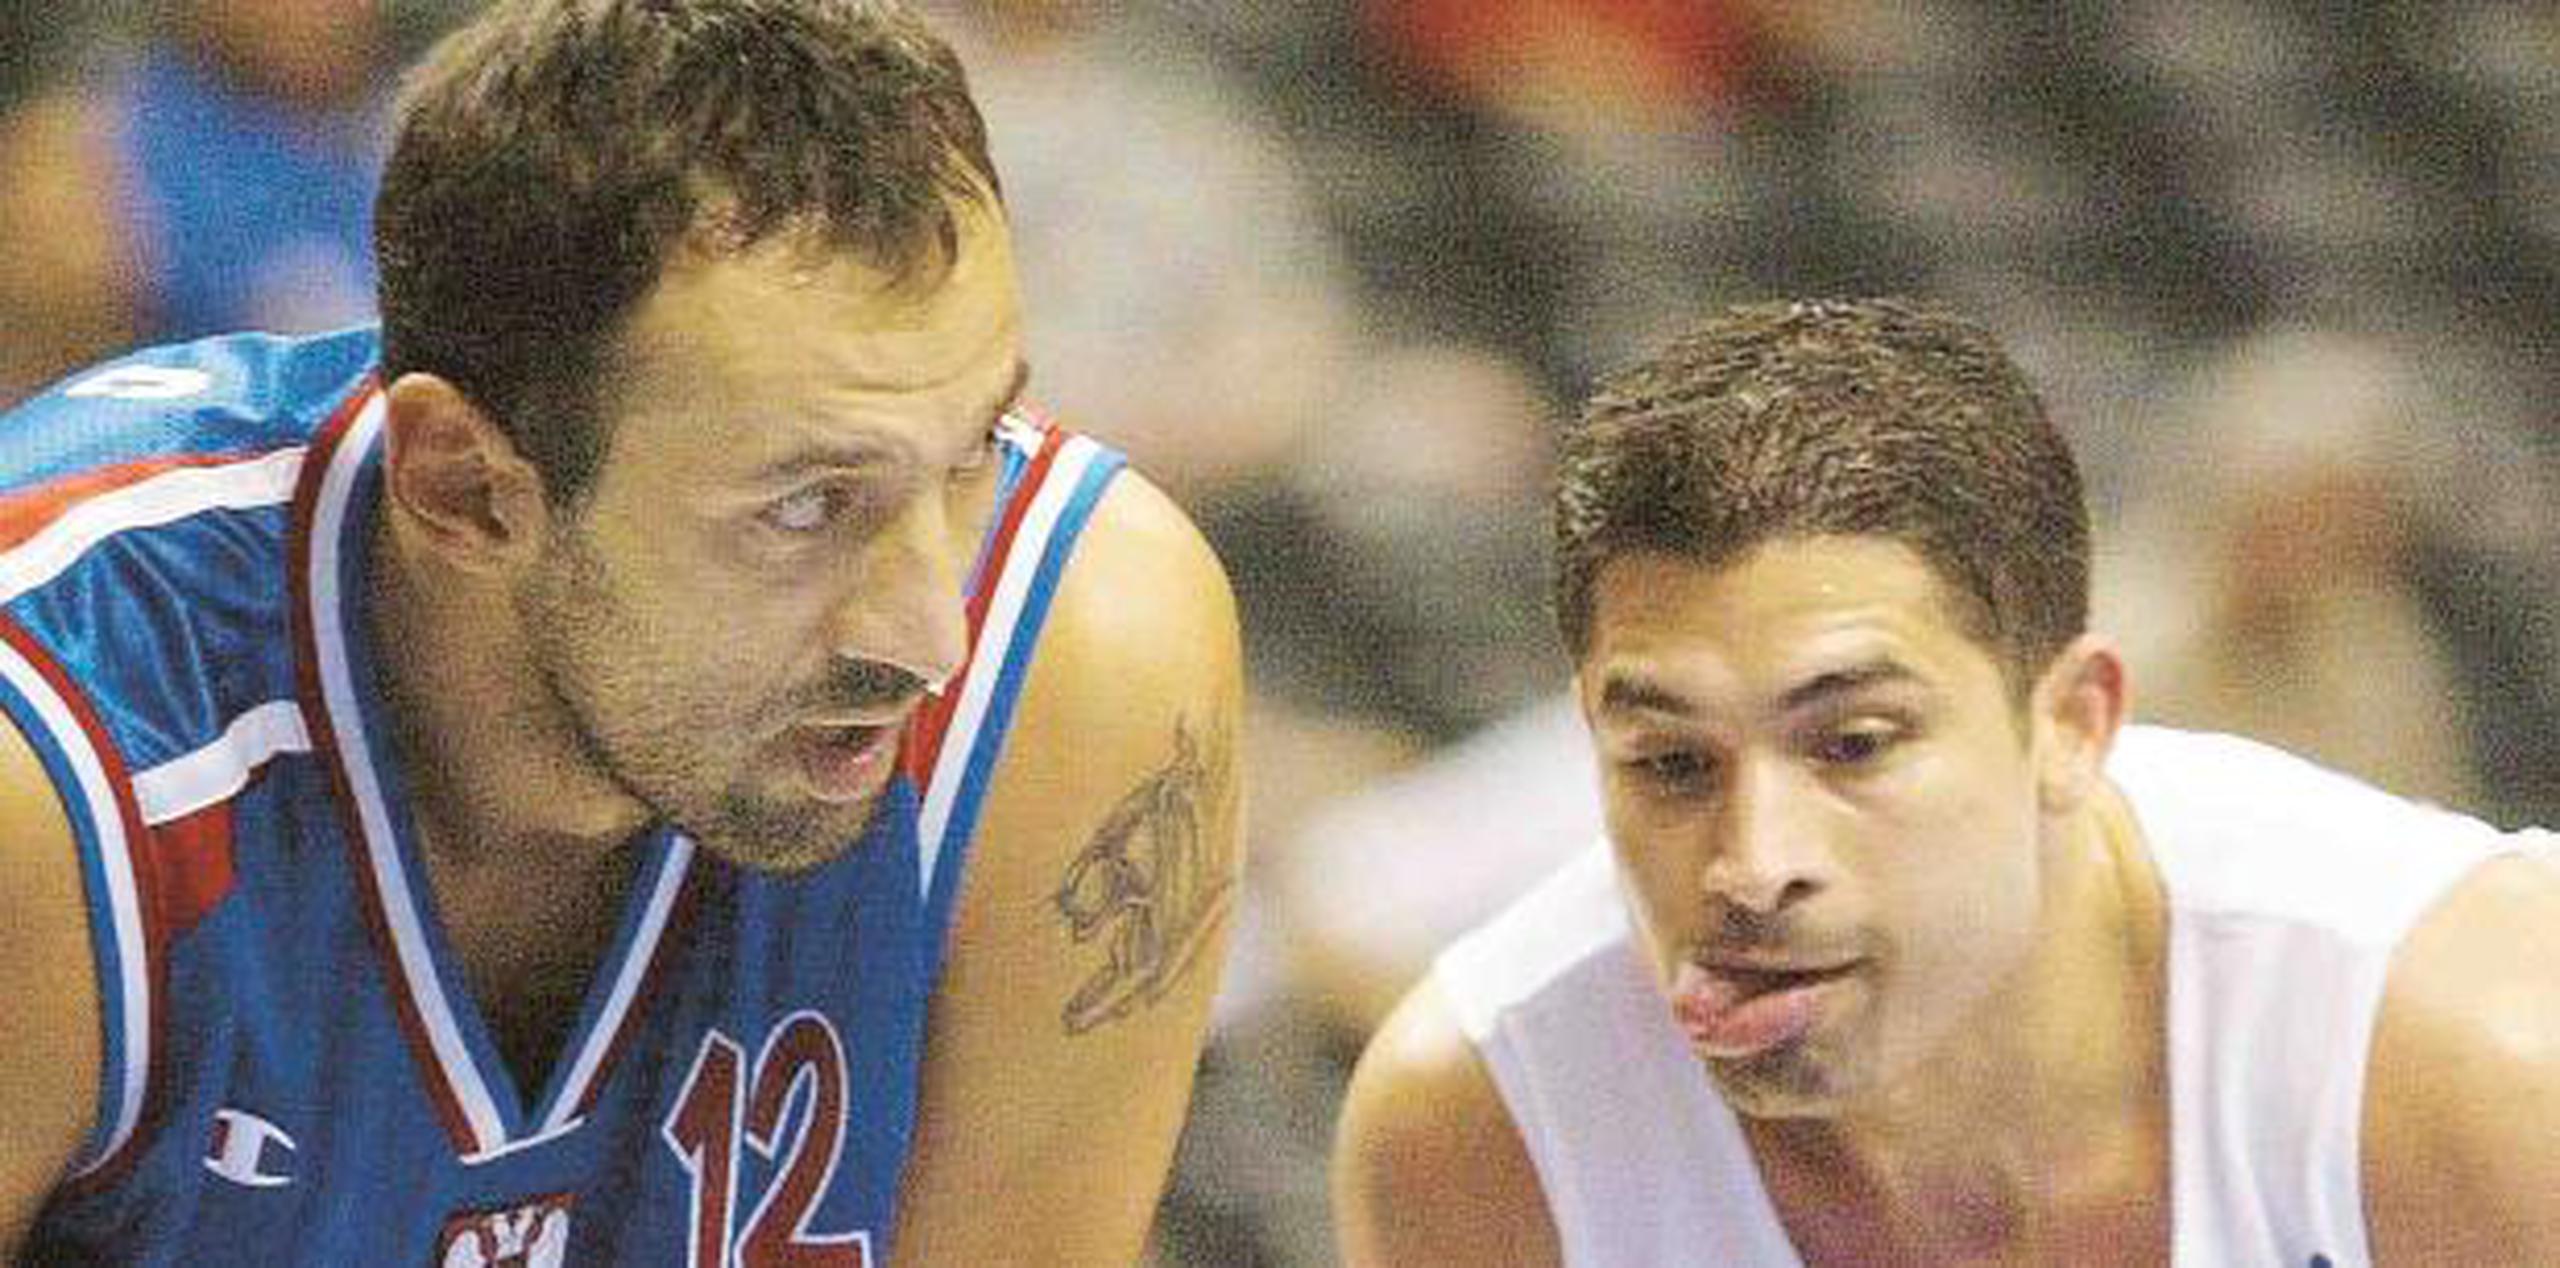 Rolando Hourruitiner le saca la lengua a Vlade Divac durante un juego en el que Puerto Rico venció a Yugoslavia en el Mundial FIBA 2002. Yugoslavia eventualmente gano el torneo. (Archivo)